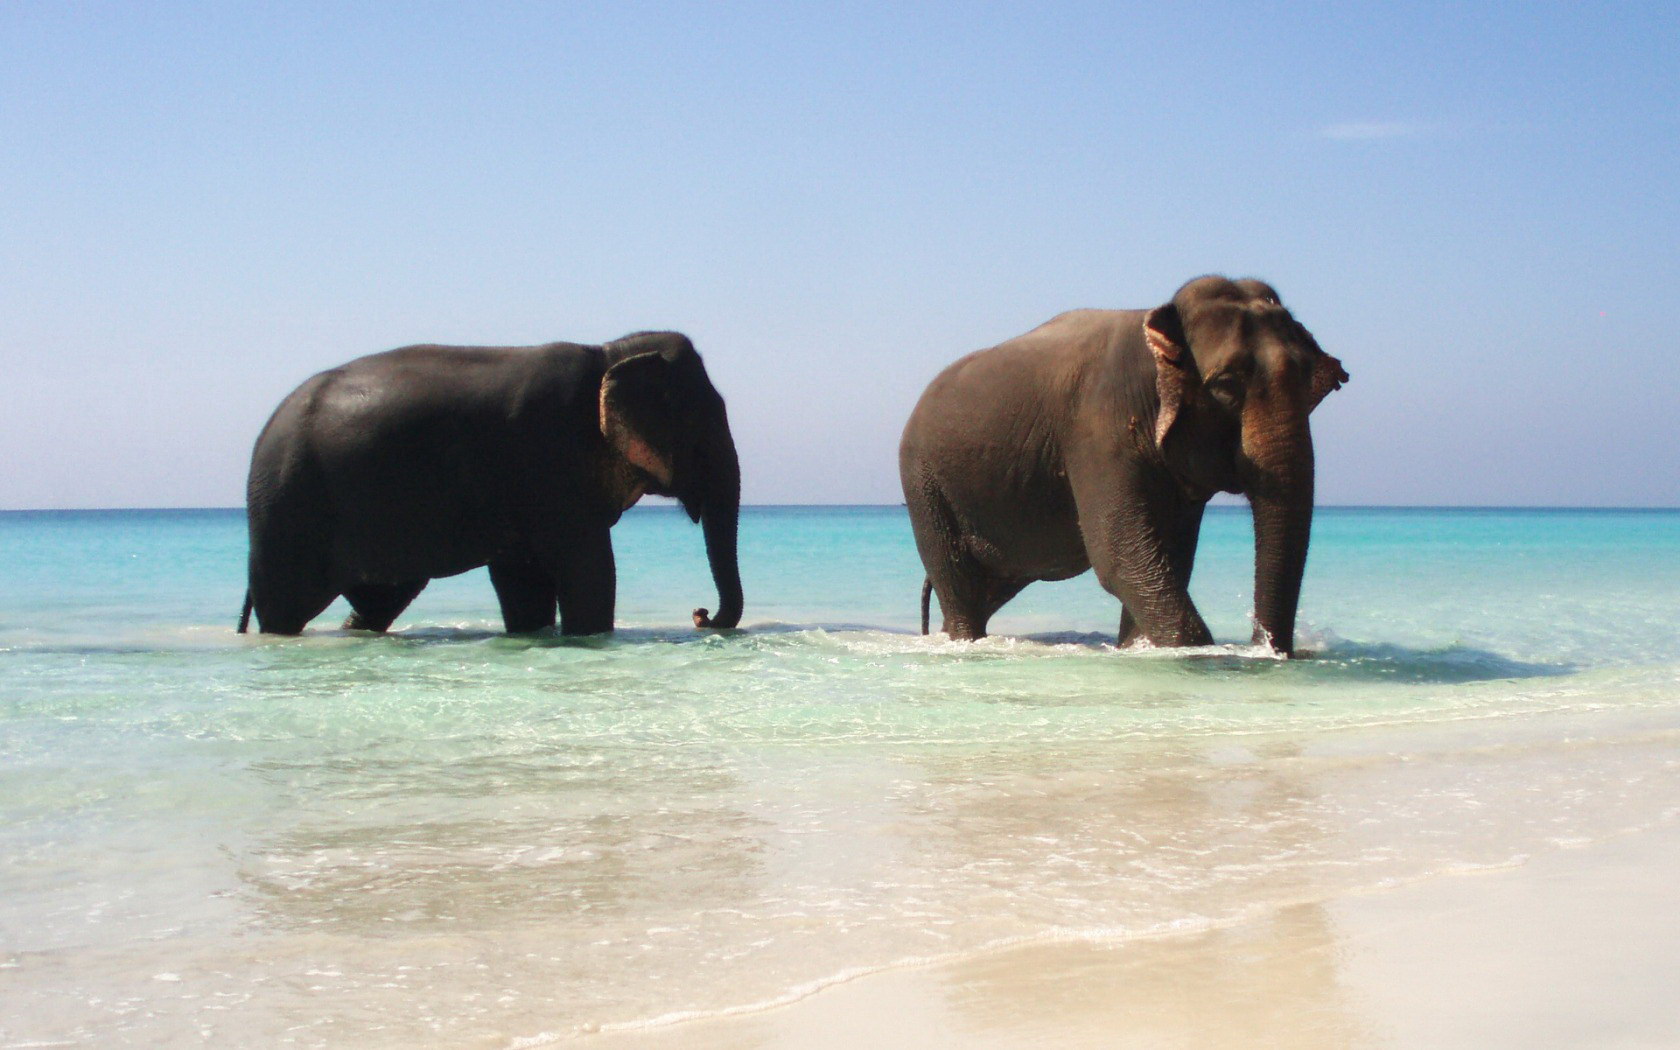 Elephants by the ocean